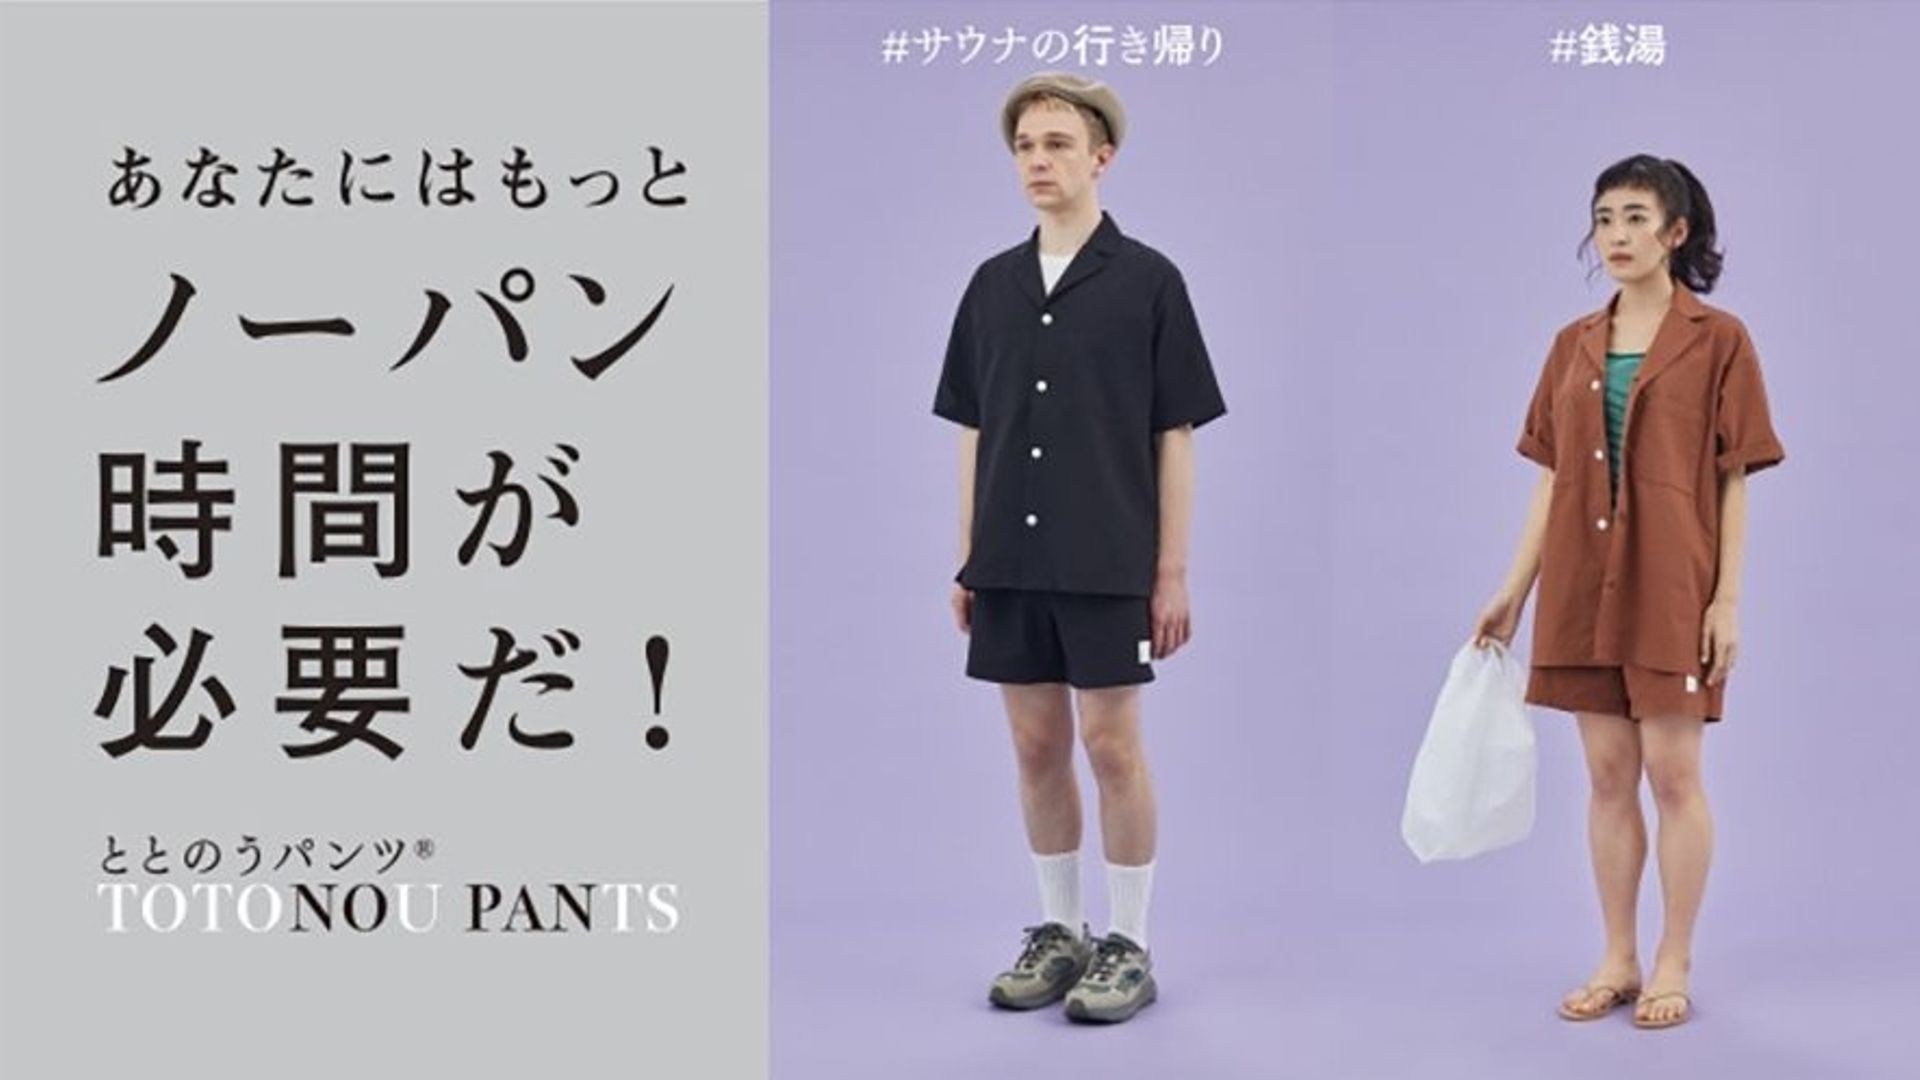 Une marque japonaise veut en finir avec les sous-vêtements.